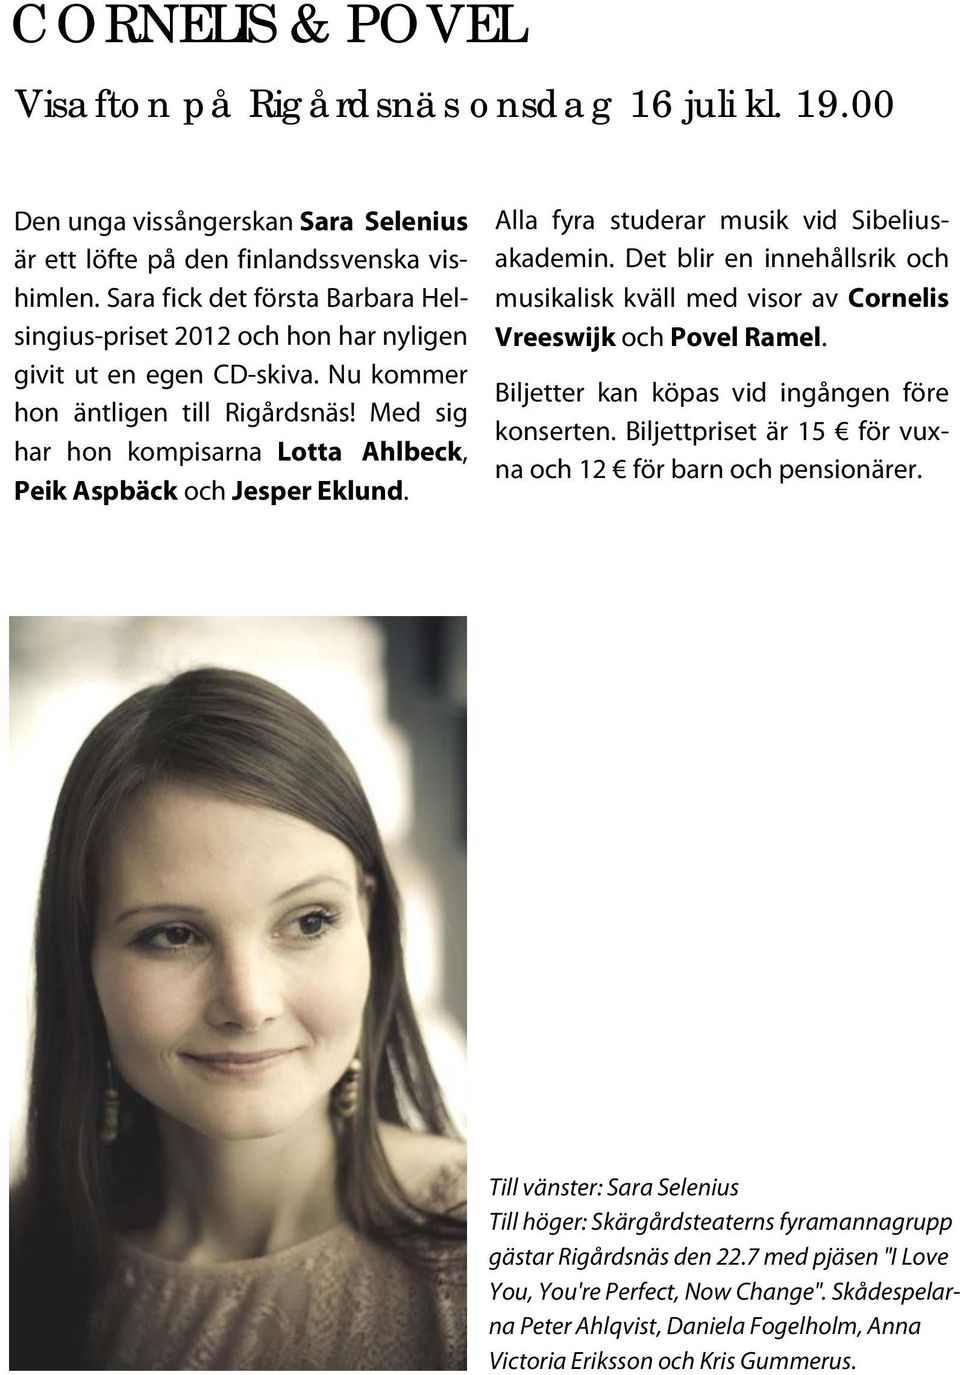 Med sig har hon kompisarna Lotta Ahlbeck, Peik Aspbäck och Jesper Eklund. Alla fyra studerar musik vid Sibeliusakademin.